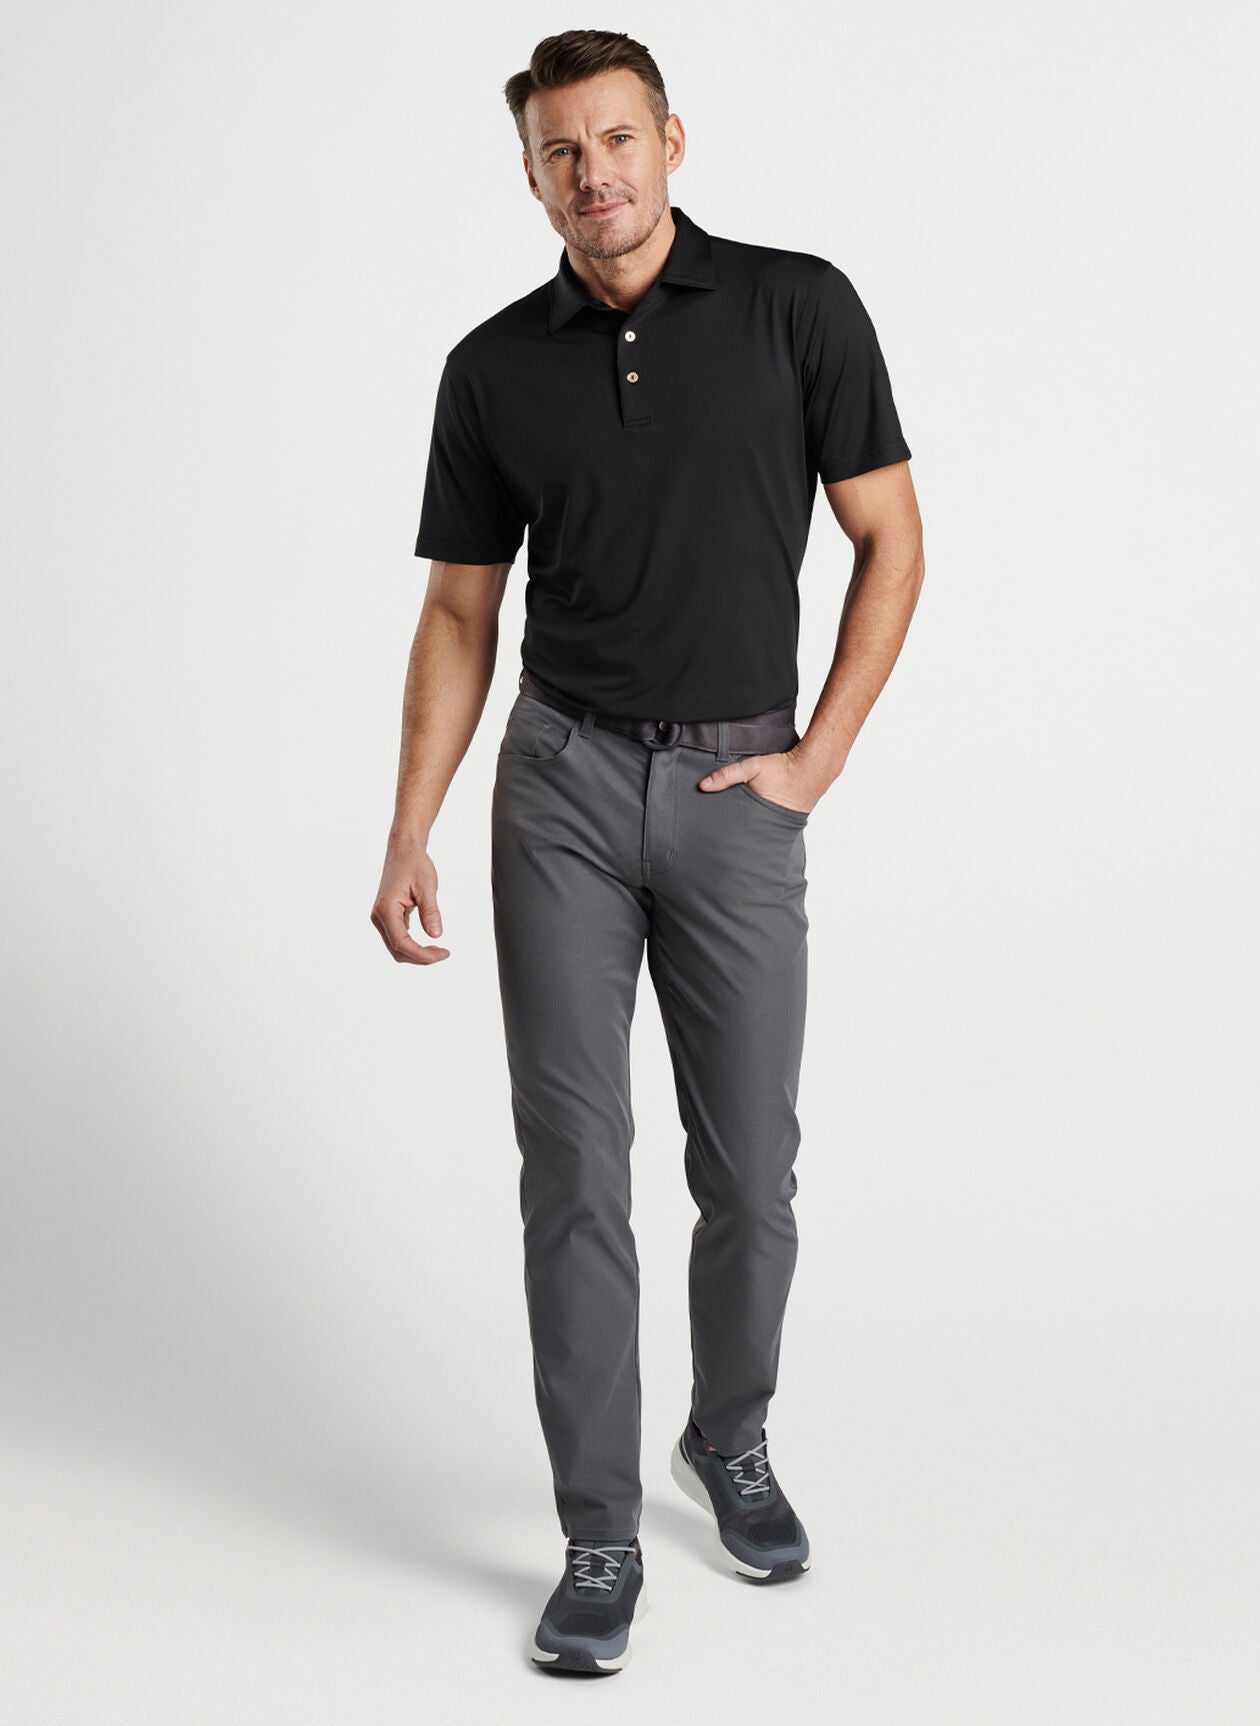 Men's short-sleeved polo shirt in black merino wool | Golden Goose